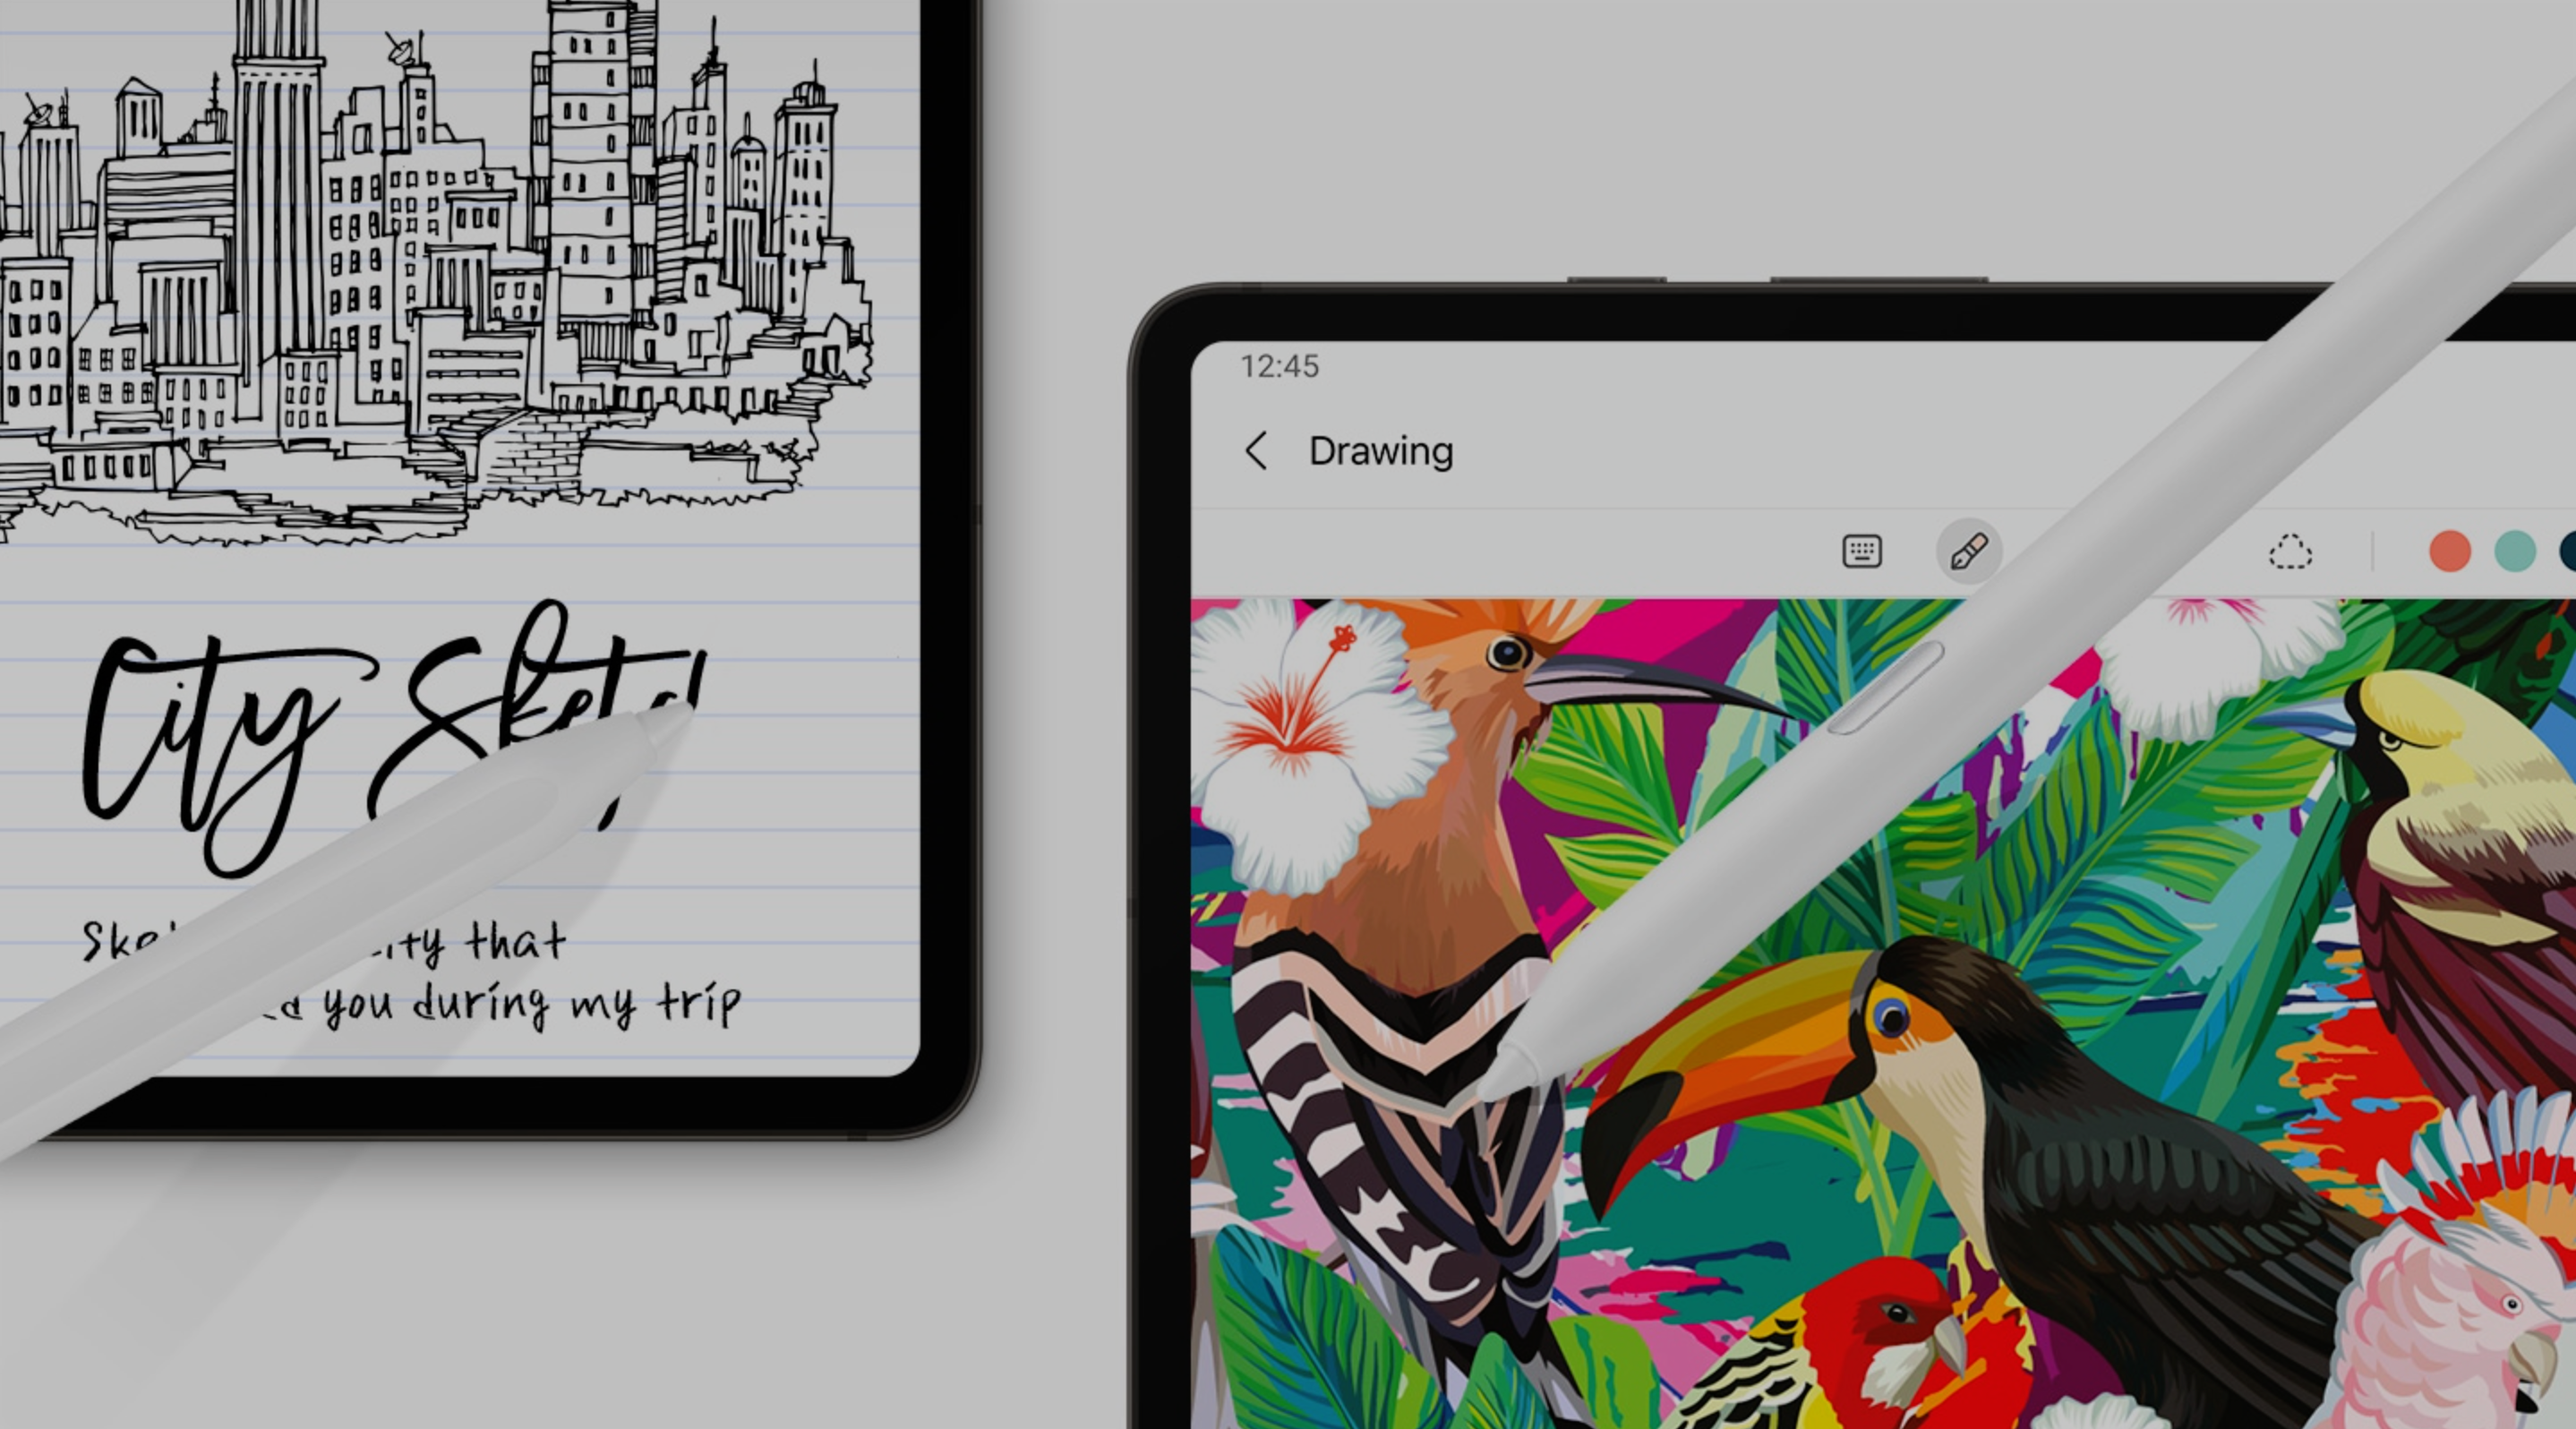 Duas canetas Galaxy S Pen Creator Edition mostradas desenhando e pintando em um tablet